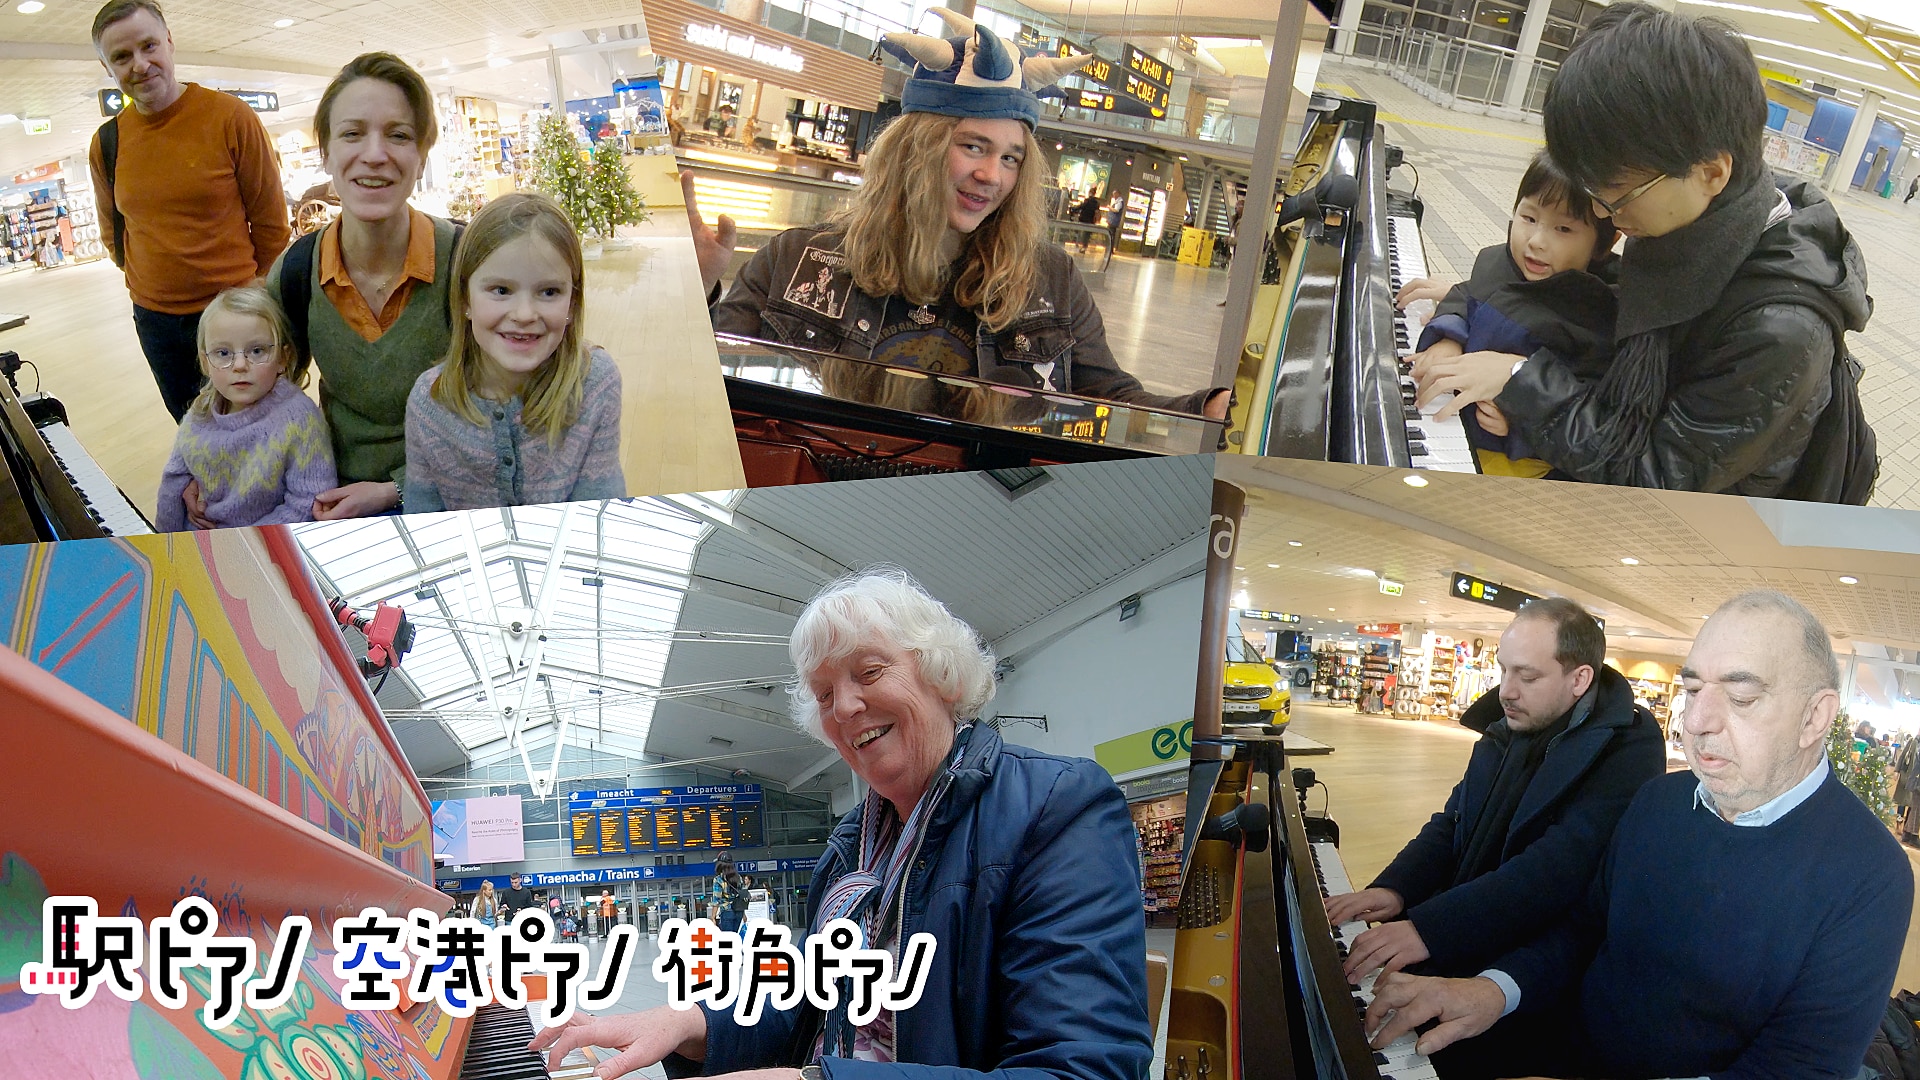 ピアノ 街角 NHK「空港ピアノ・駅ピアノ・街角ピアノ」を見て。音楽っていいなぁ